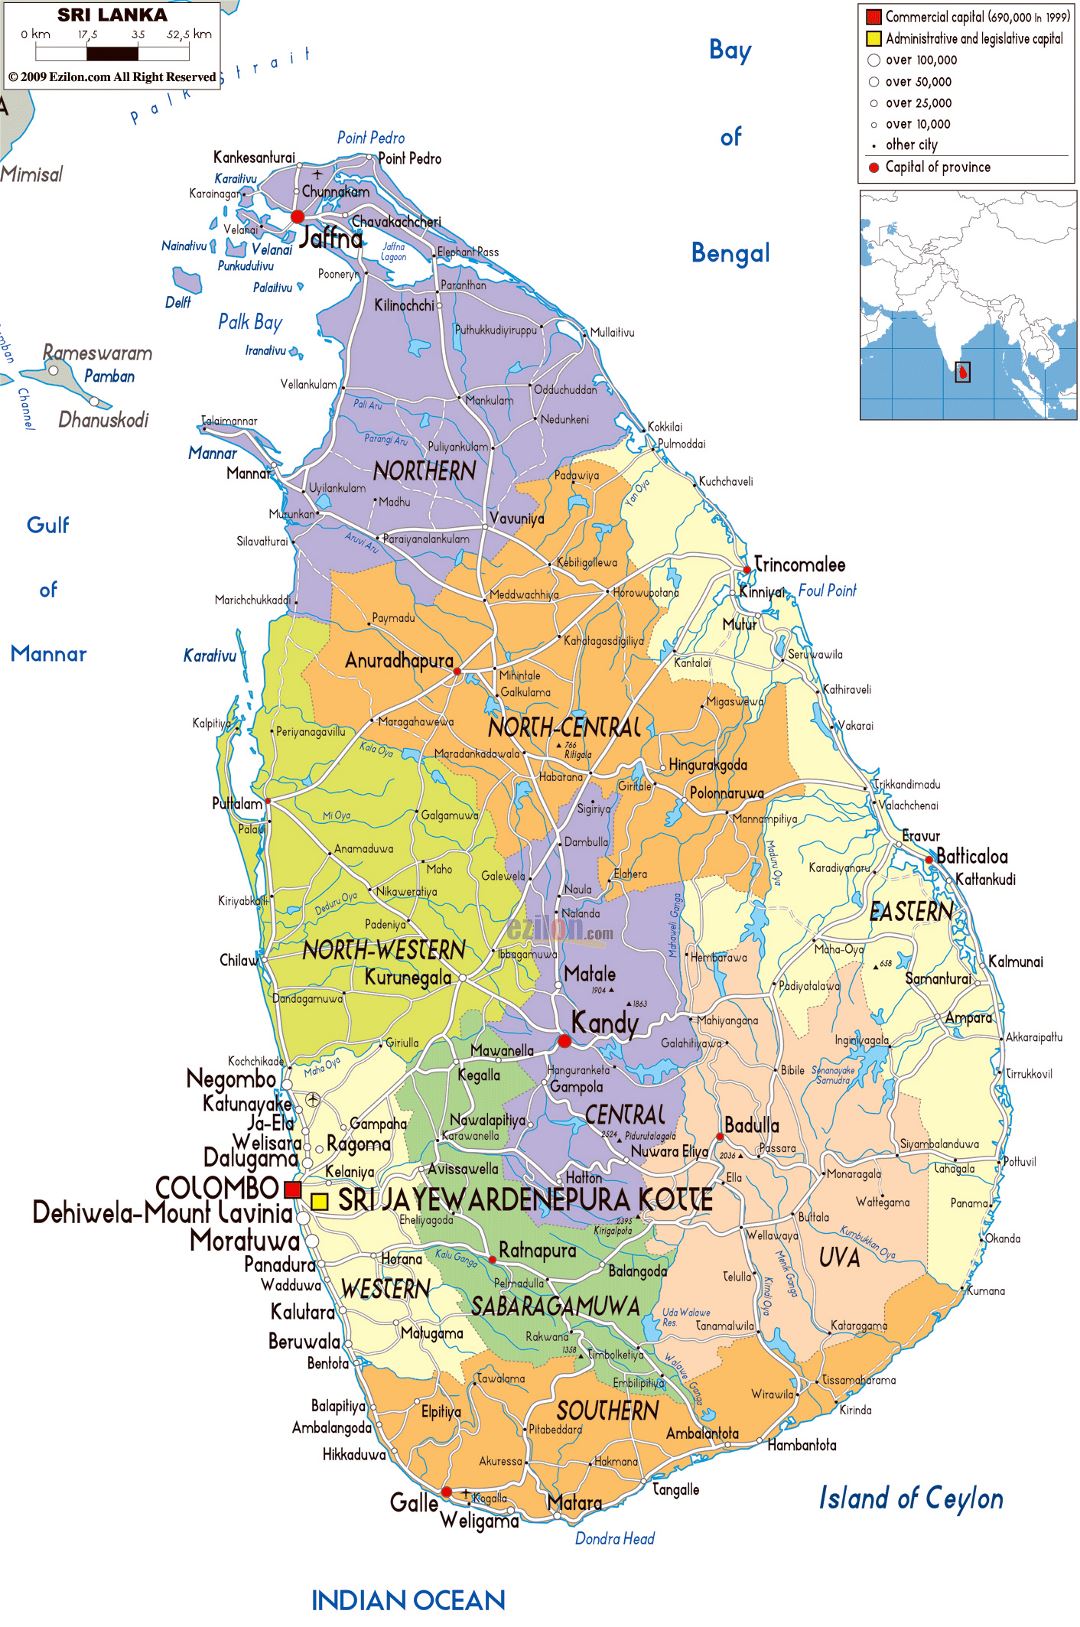 Grande mapa político y administrativo de Sri Lanka con carreteras, ciudades y aeropuertos